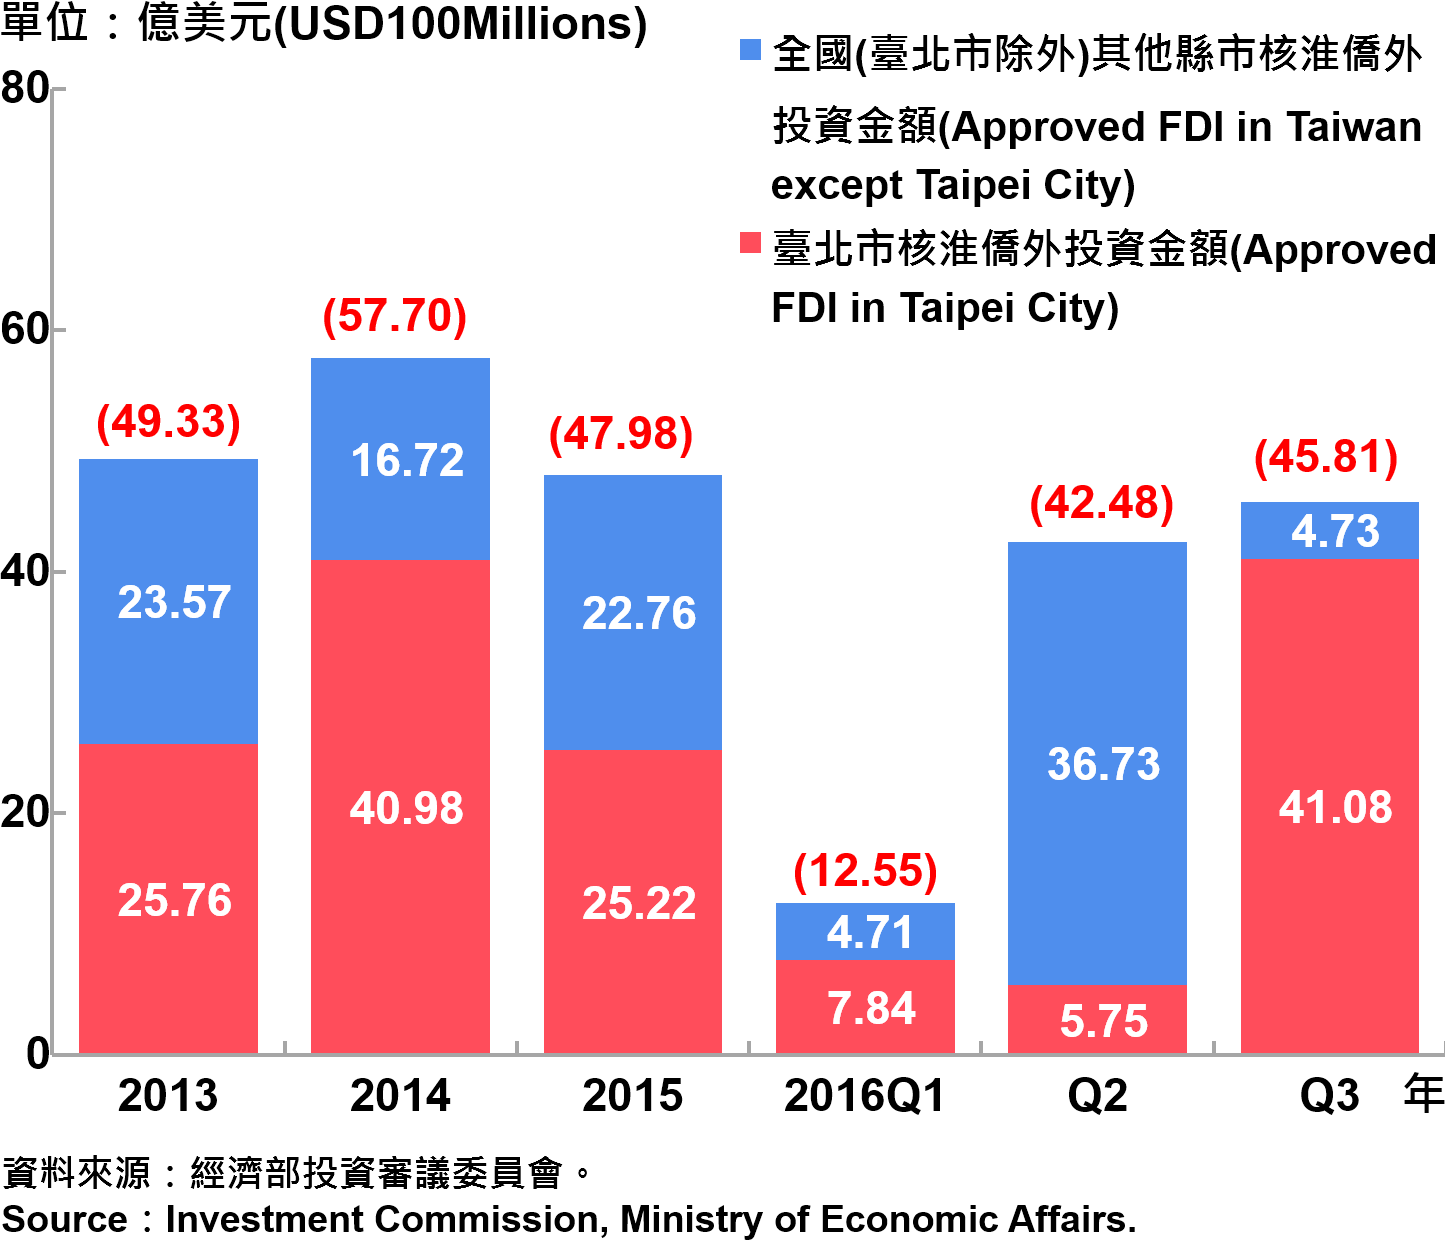 圖13、臺北市與全國僑外投資金額—2016Q3 Foreign Direct Investment （FDI） in Taipei and Taiwan Area—2016Q3